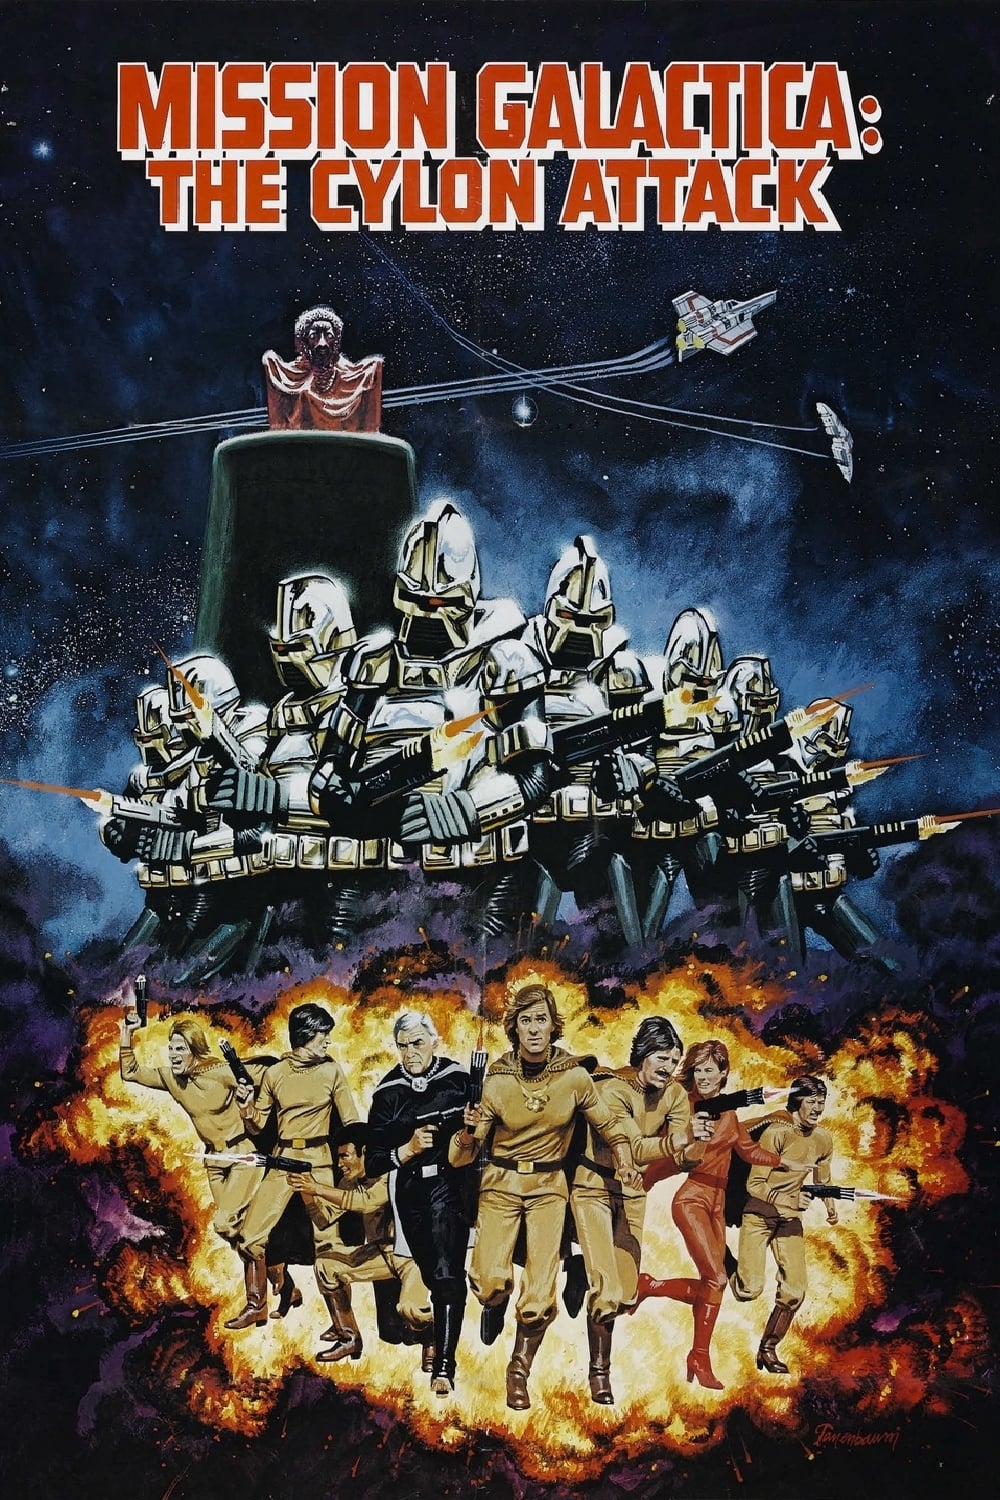 Misión Galáctica: Cylon ataca (1979)